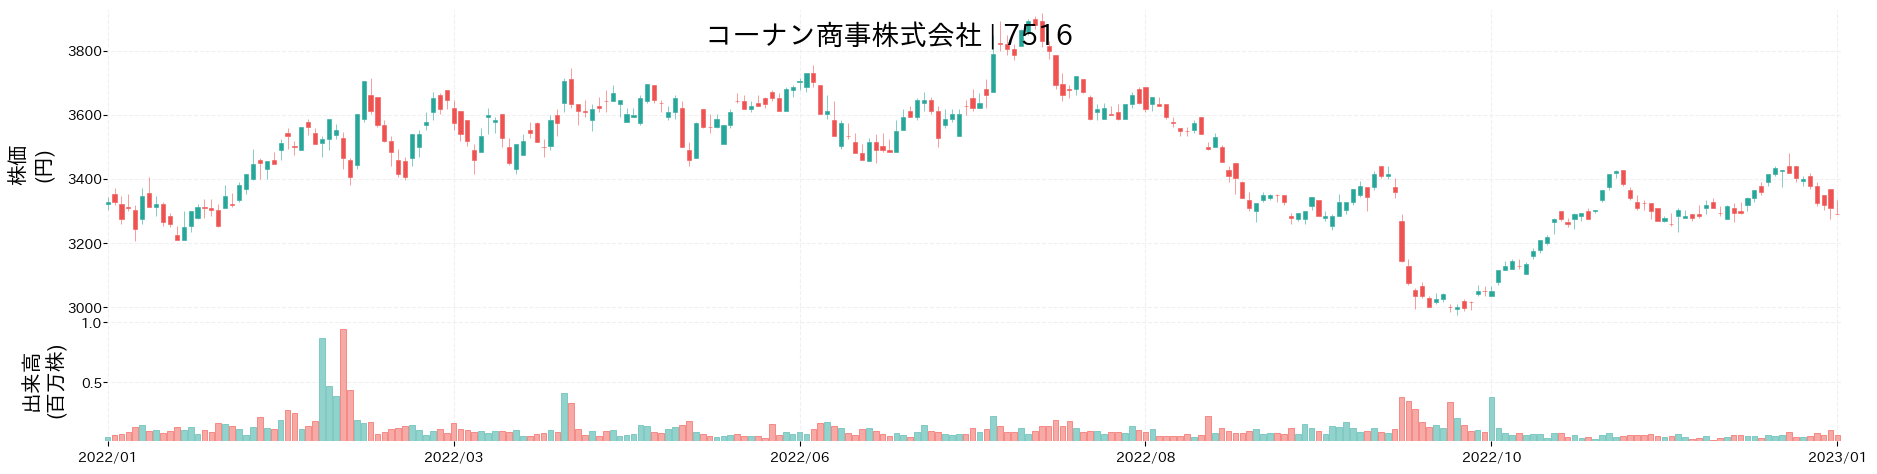 コーナン商事の株価推移(2022)